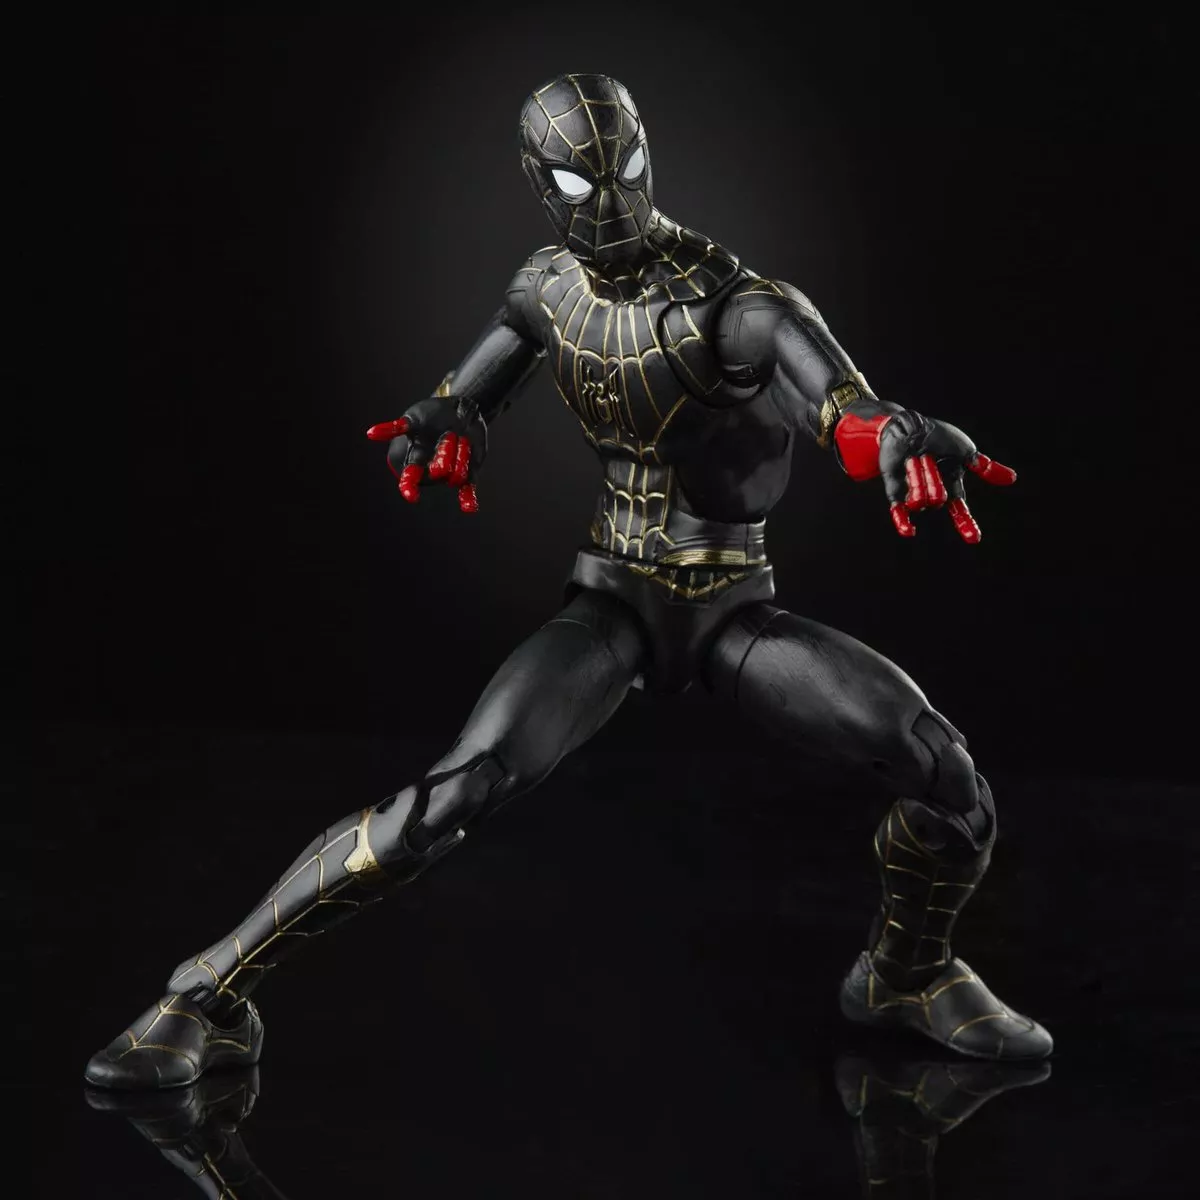 image Vaza merchandising de Homem-Aranha 3 revelando uniforme novo do personagem principal.